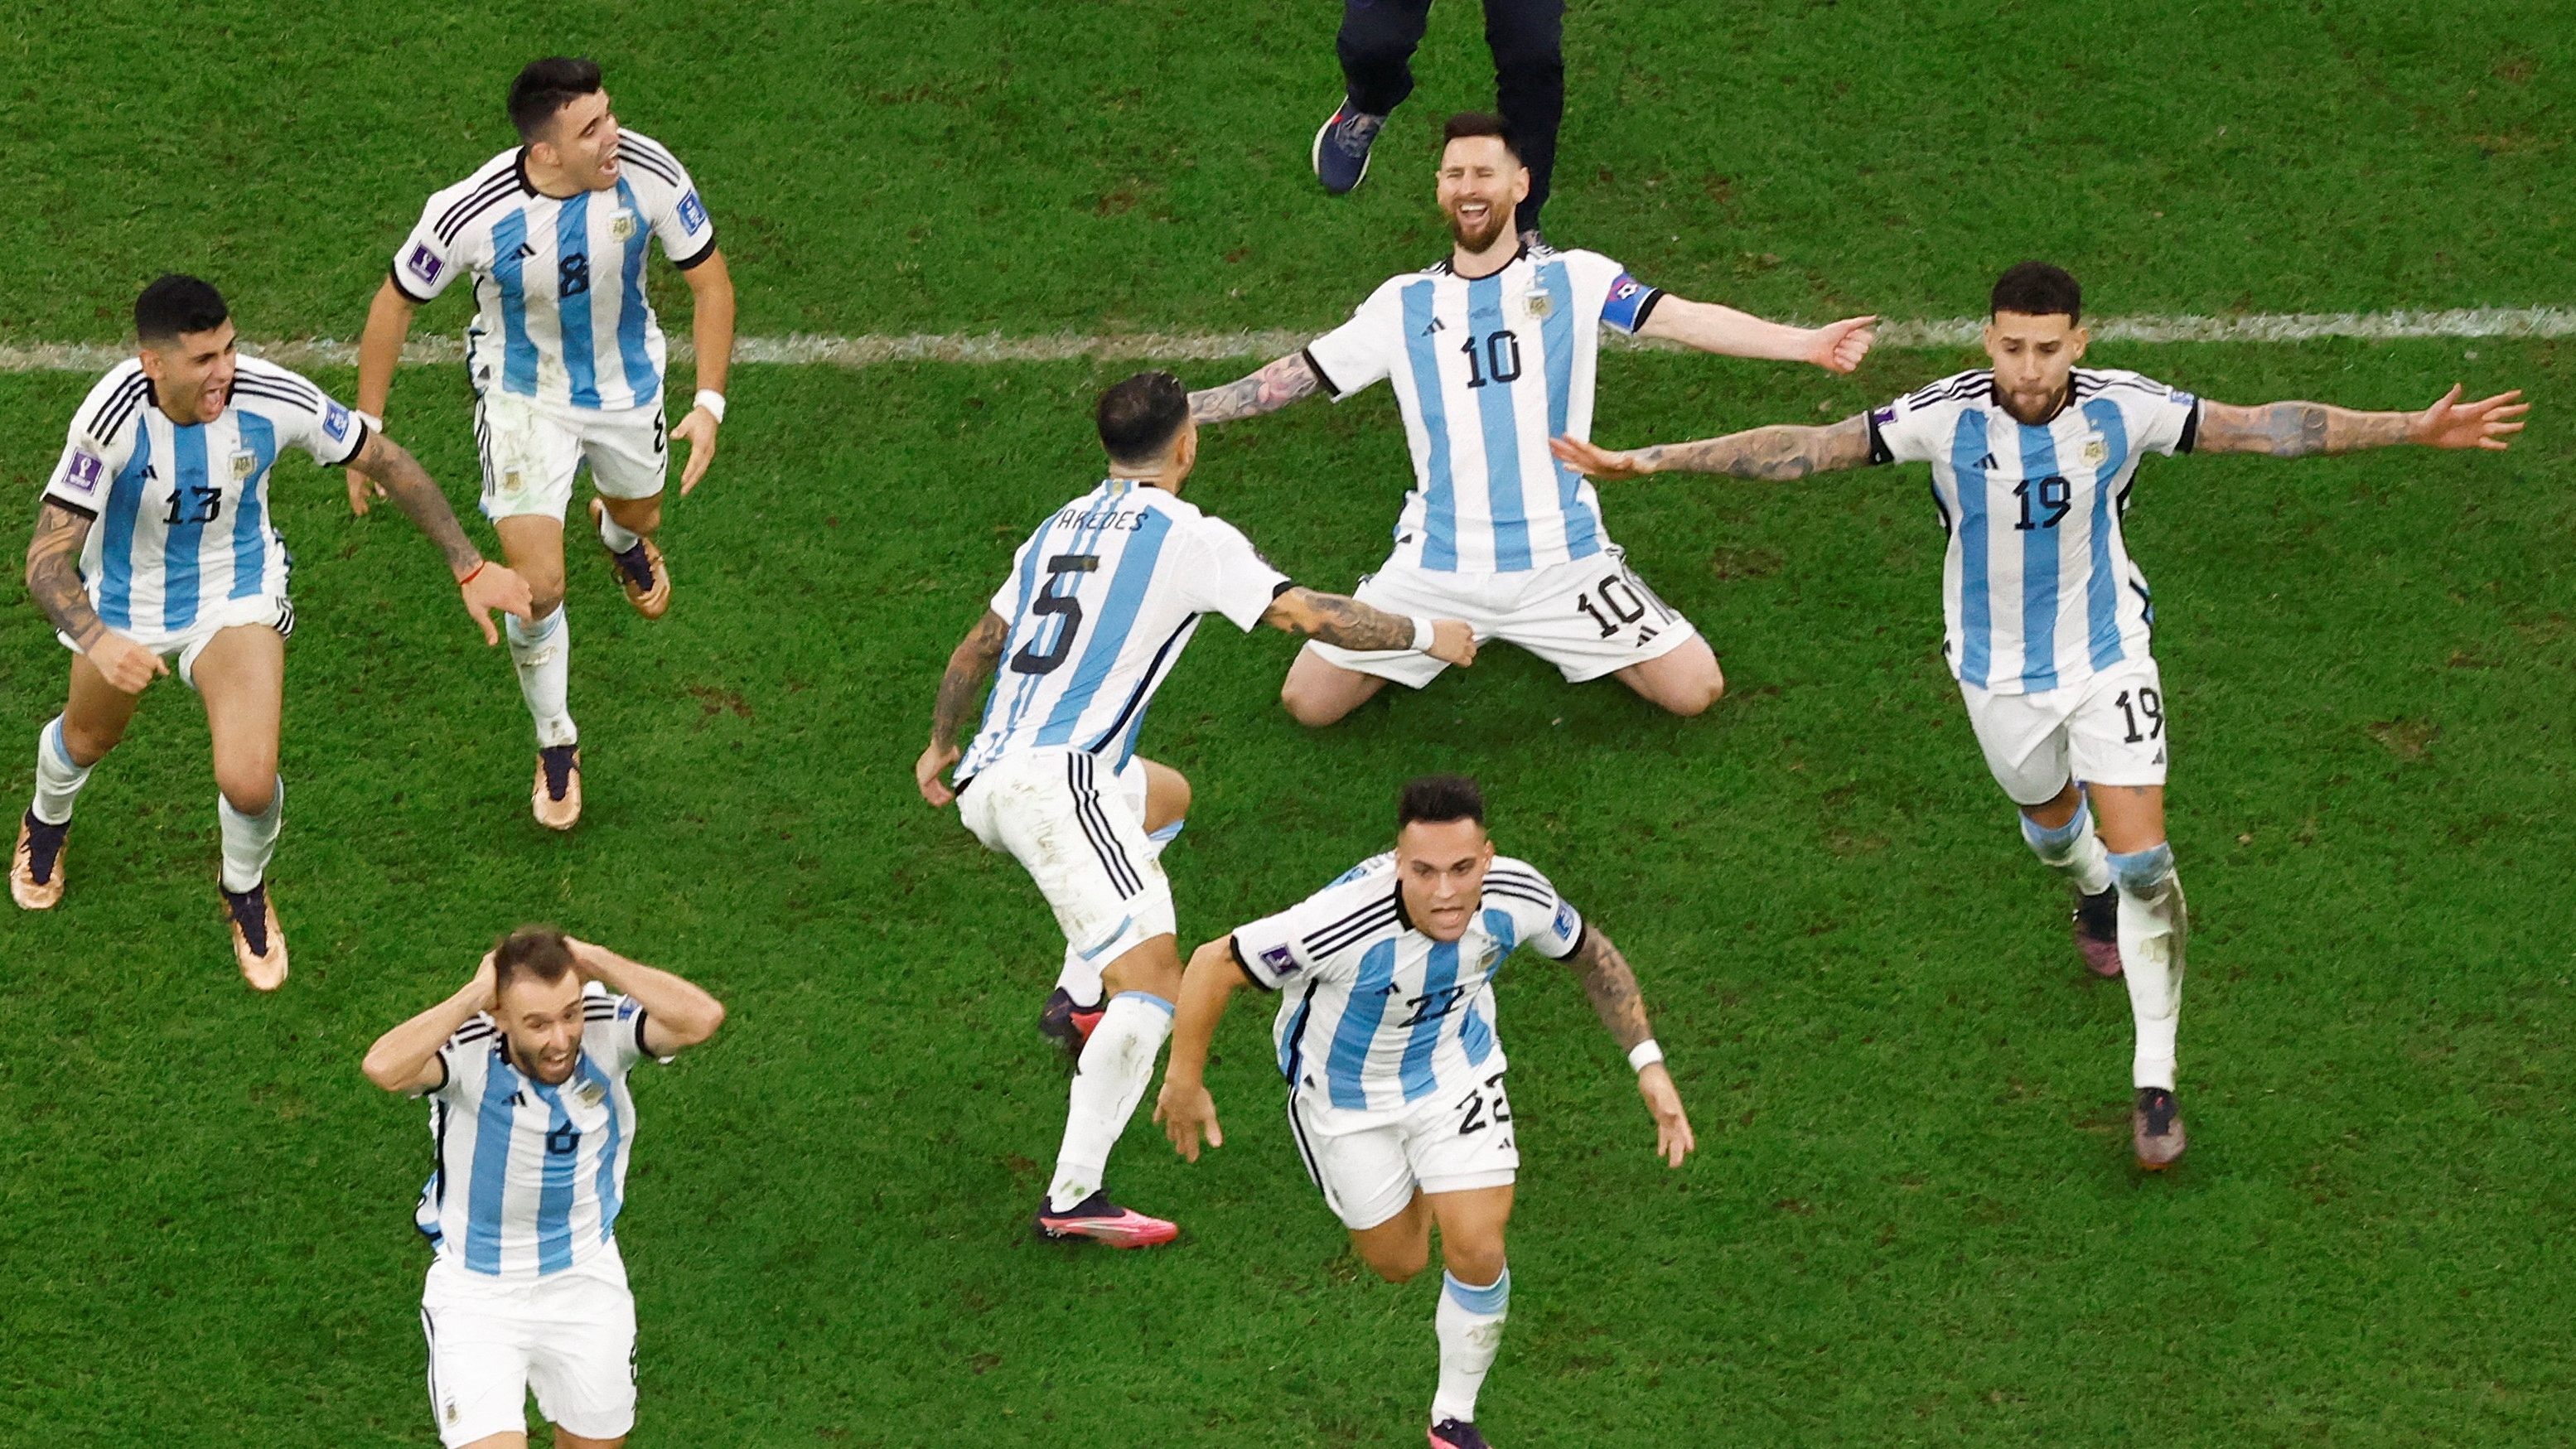 El conmovedor video con imágenes inéditas del festejo argentino en el Mundial: las lágrimas de Messi, Di María y Scaloni tras el último penal